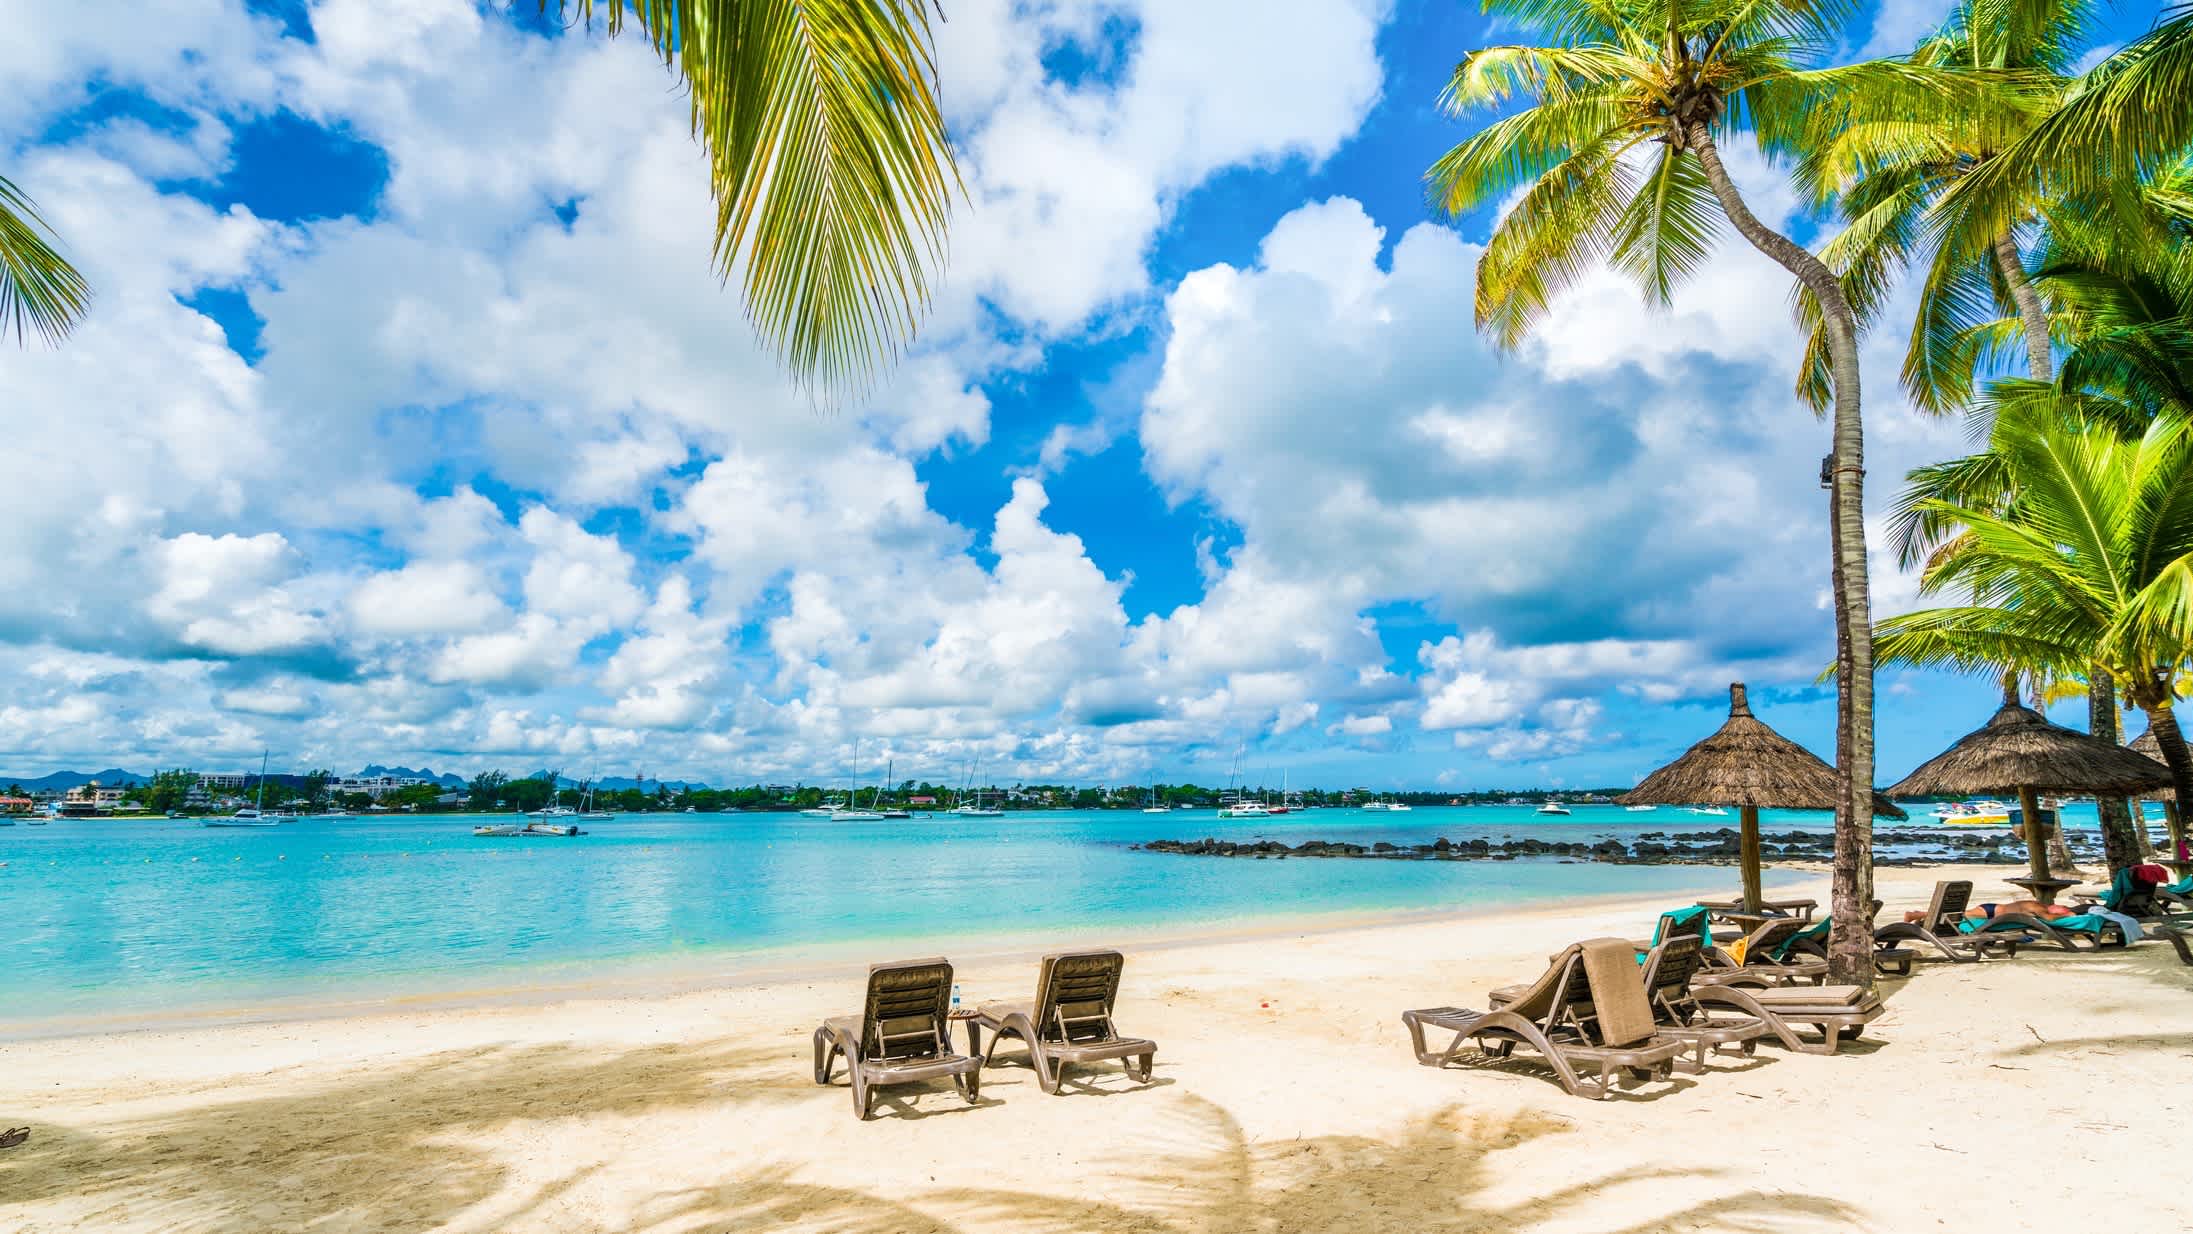 Liegestühle am Sandstrand von Grand Baie auf Mauritius mit Blick auf das Meer und Palmen im Bild.